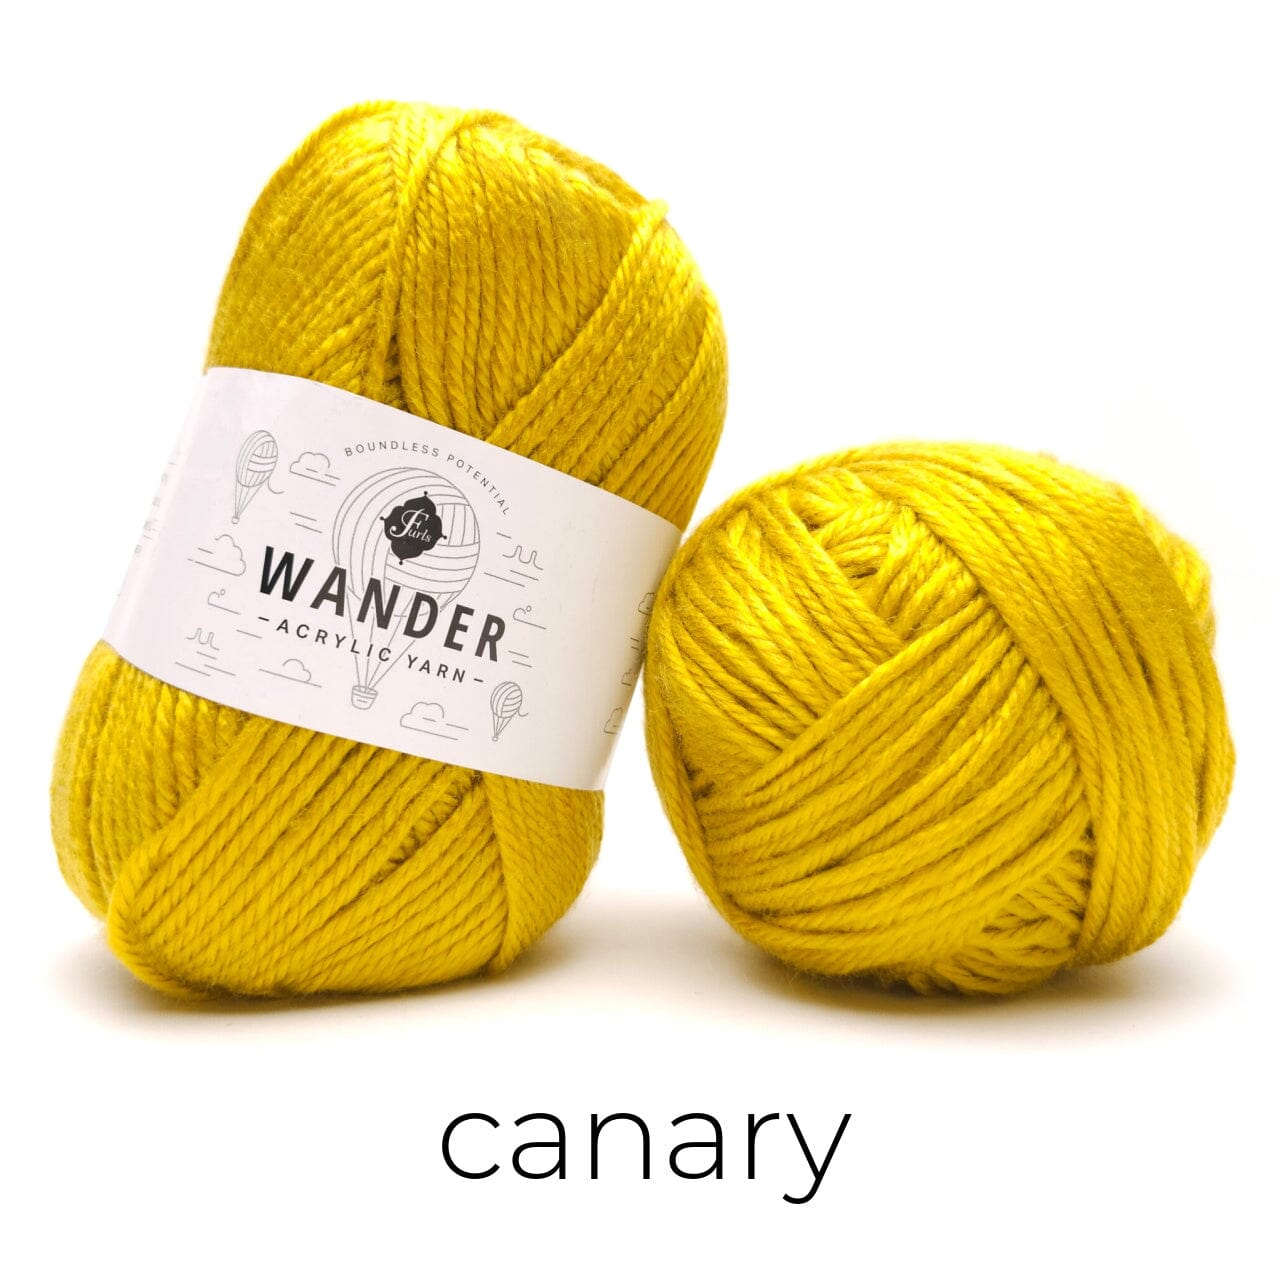 Wander Acrylic Yarn Yarn FurlsCrochet Canary 